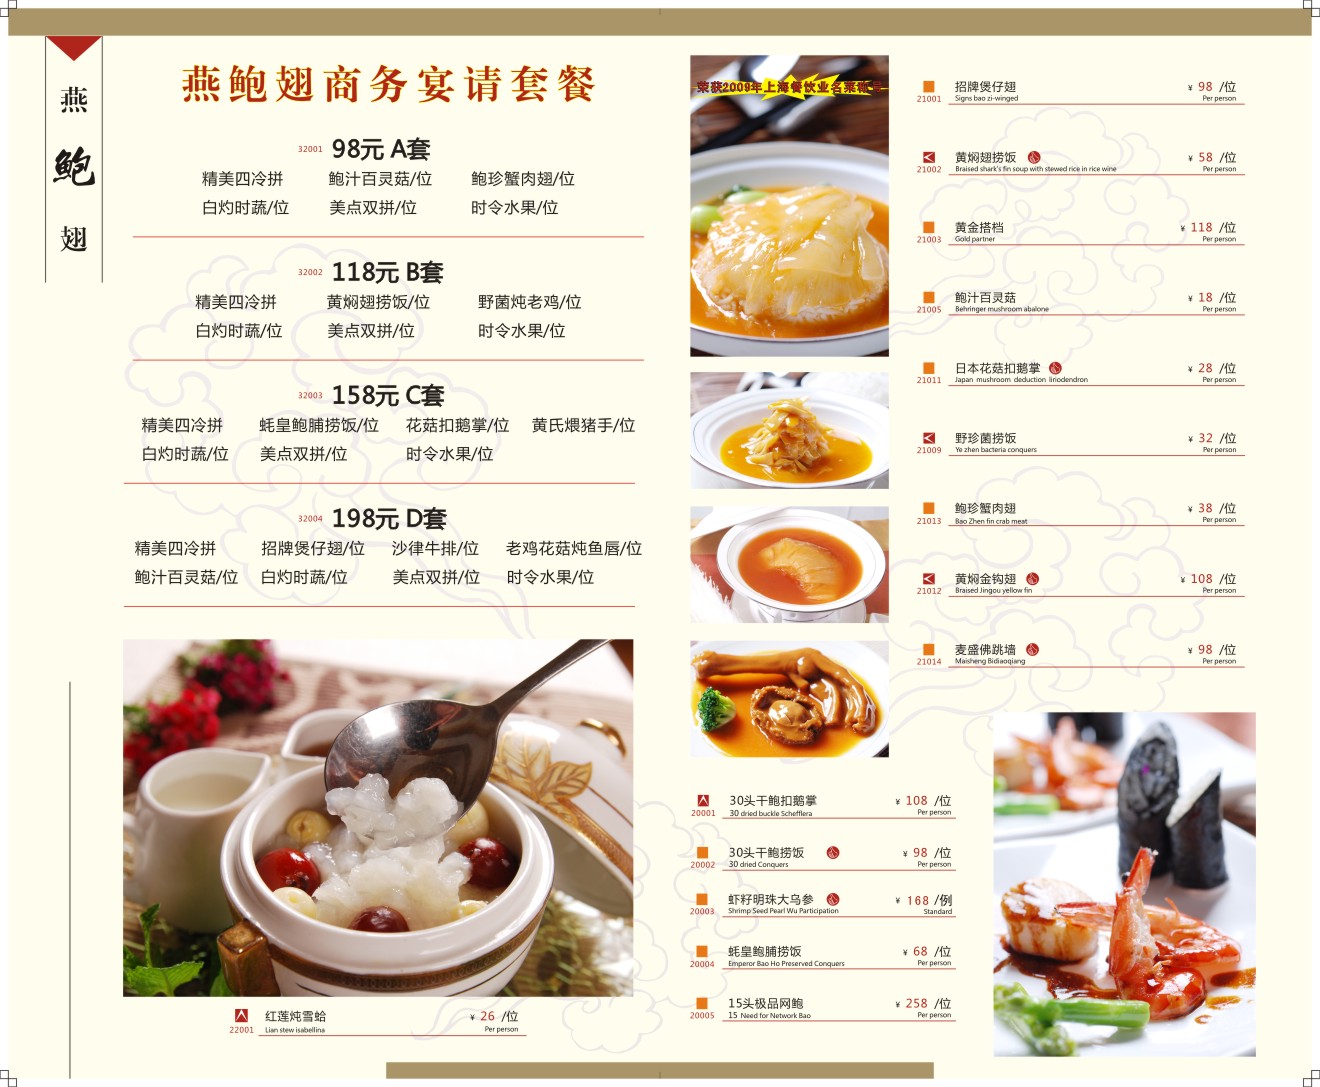 ﻿海派中餐(中餐/刺身/海鲜) 餐馆菜单 酒店菜谱 海鲜菜谱 满座菜谱